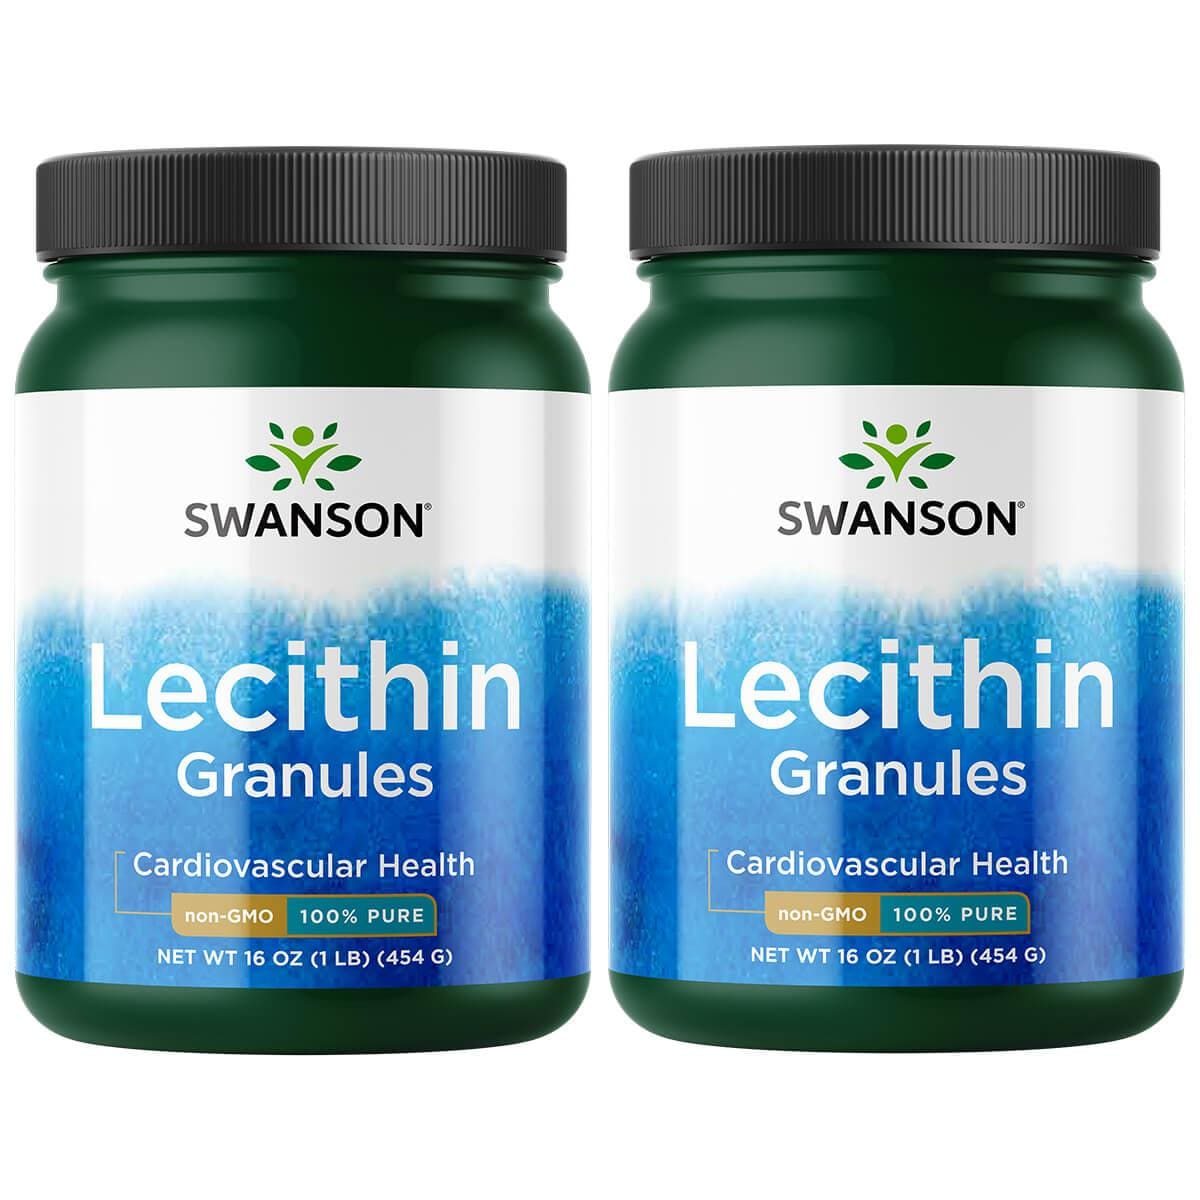 Swanson Premium Lecithin Granules - Non-Gmo 100% Pure 2 Pack Supplement Vitamin 16 oz Granules